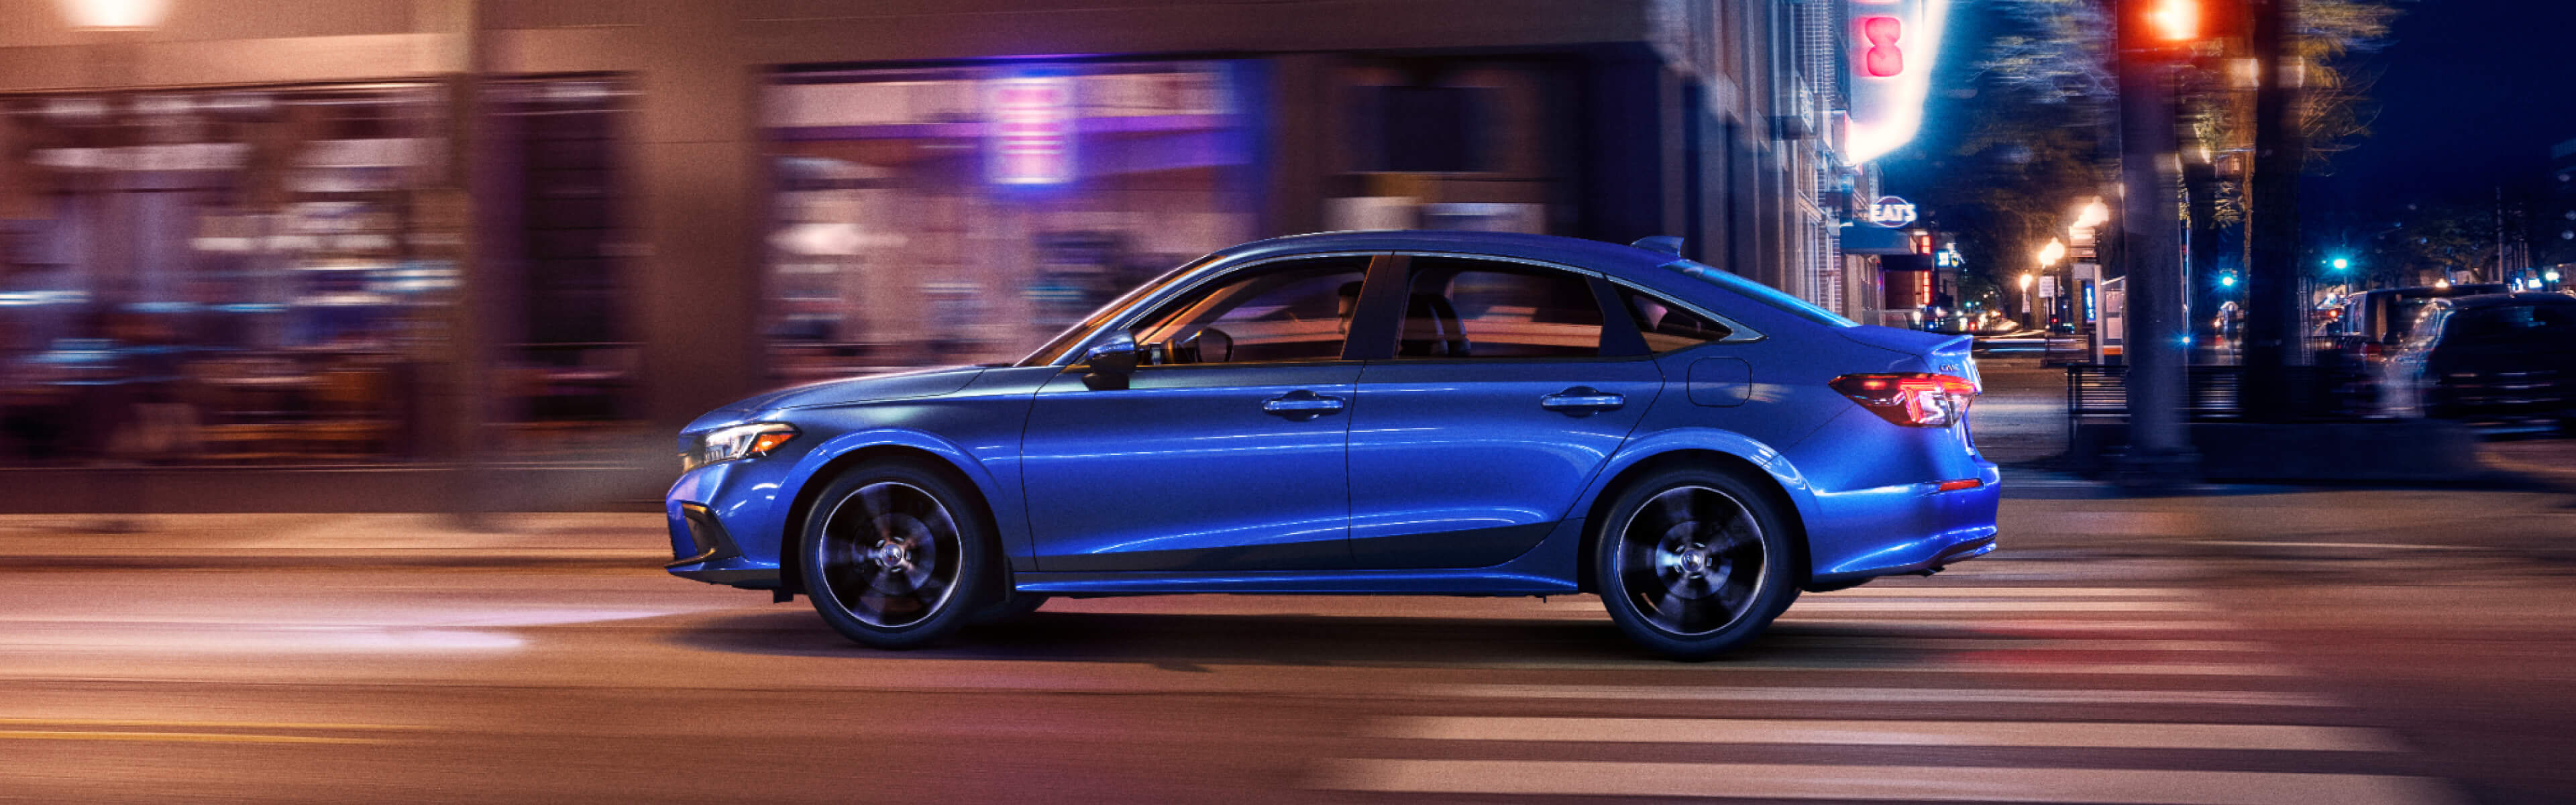 Vue latérale d’une Honda Civic bleue 2022 circulant de nuit dans un centre-ville. L’image est légèrement floue pour rendre le mouvement de la prise de vue.